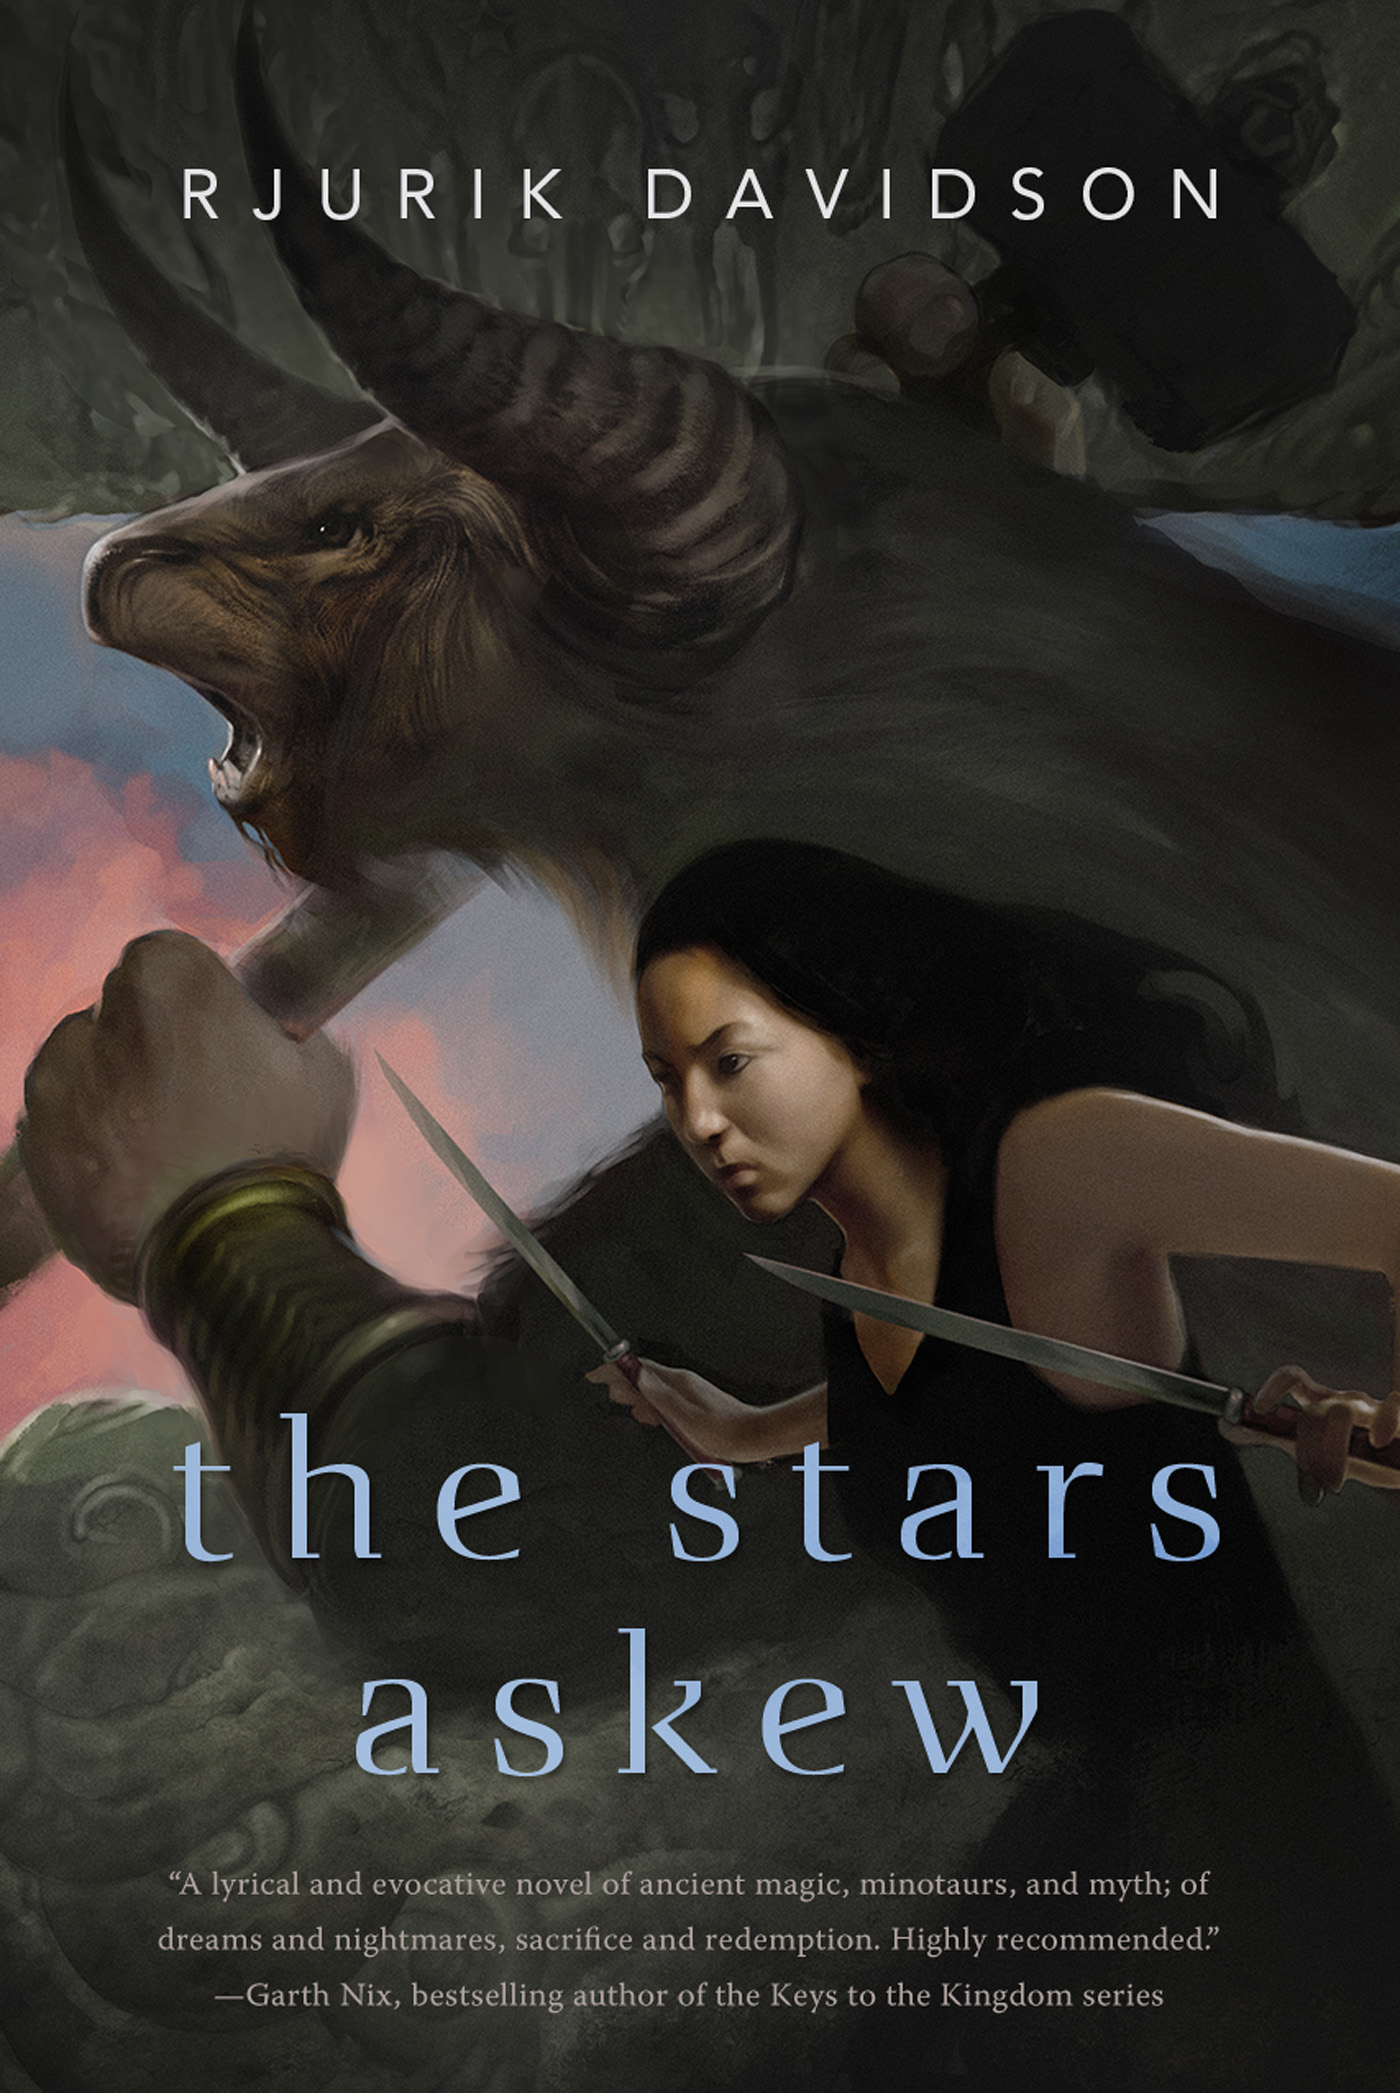 The Stars Askew by Rjurik Davidson